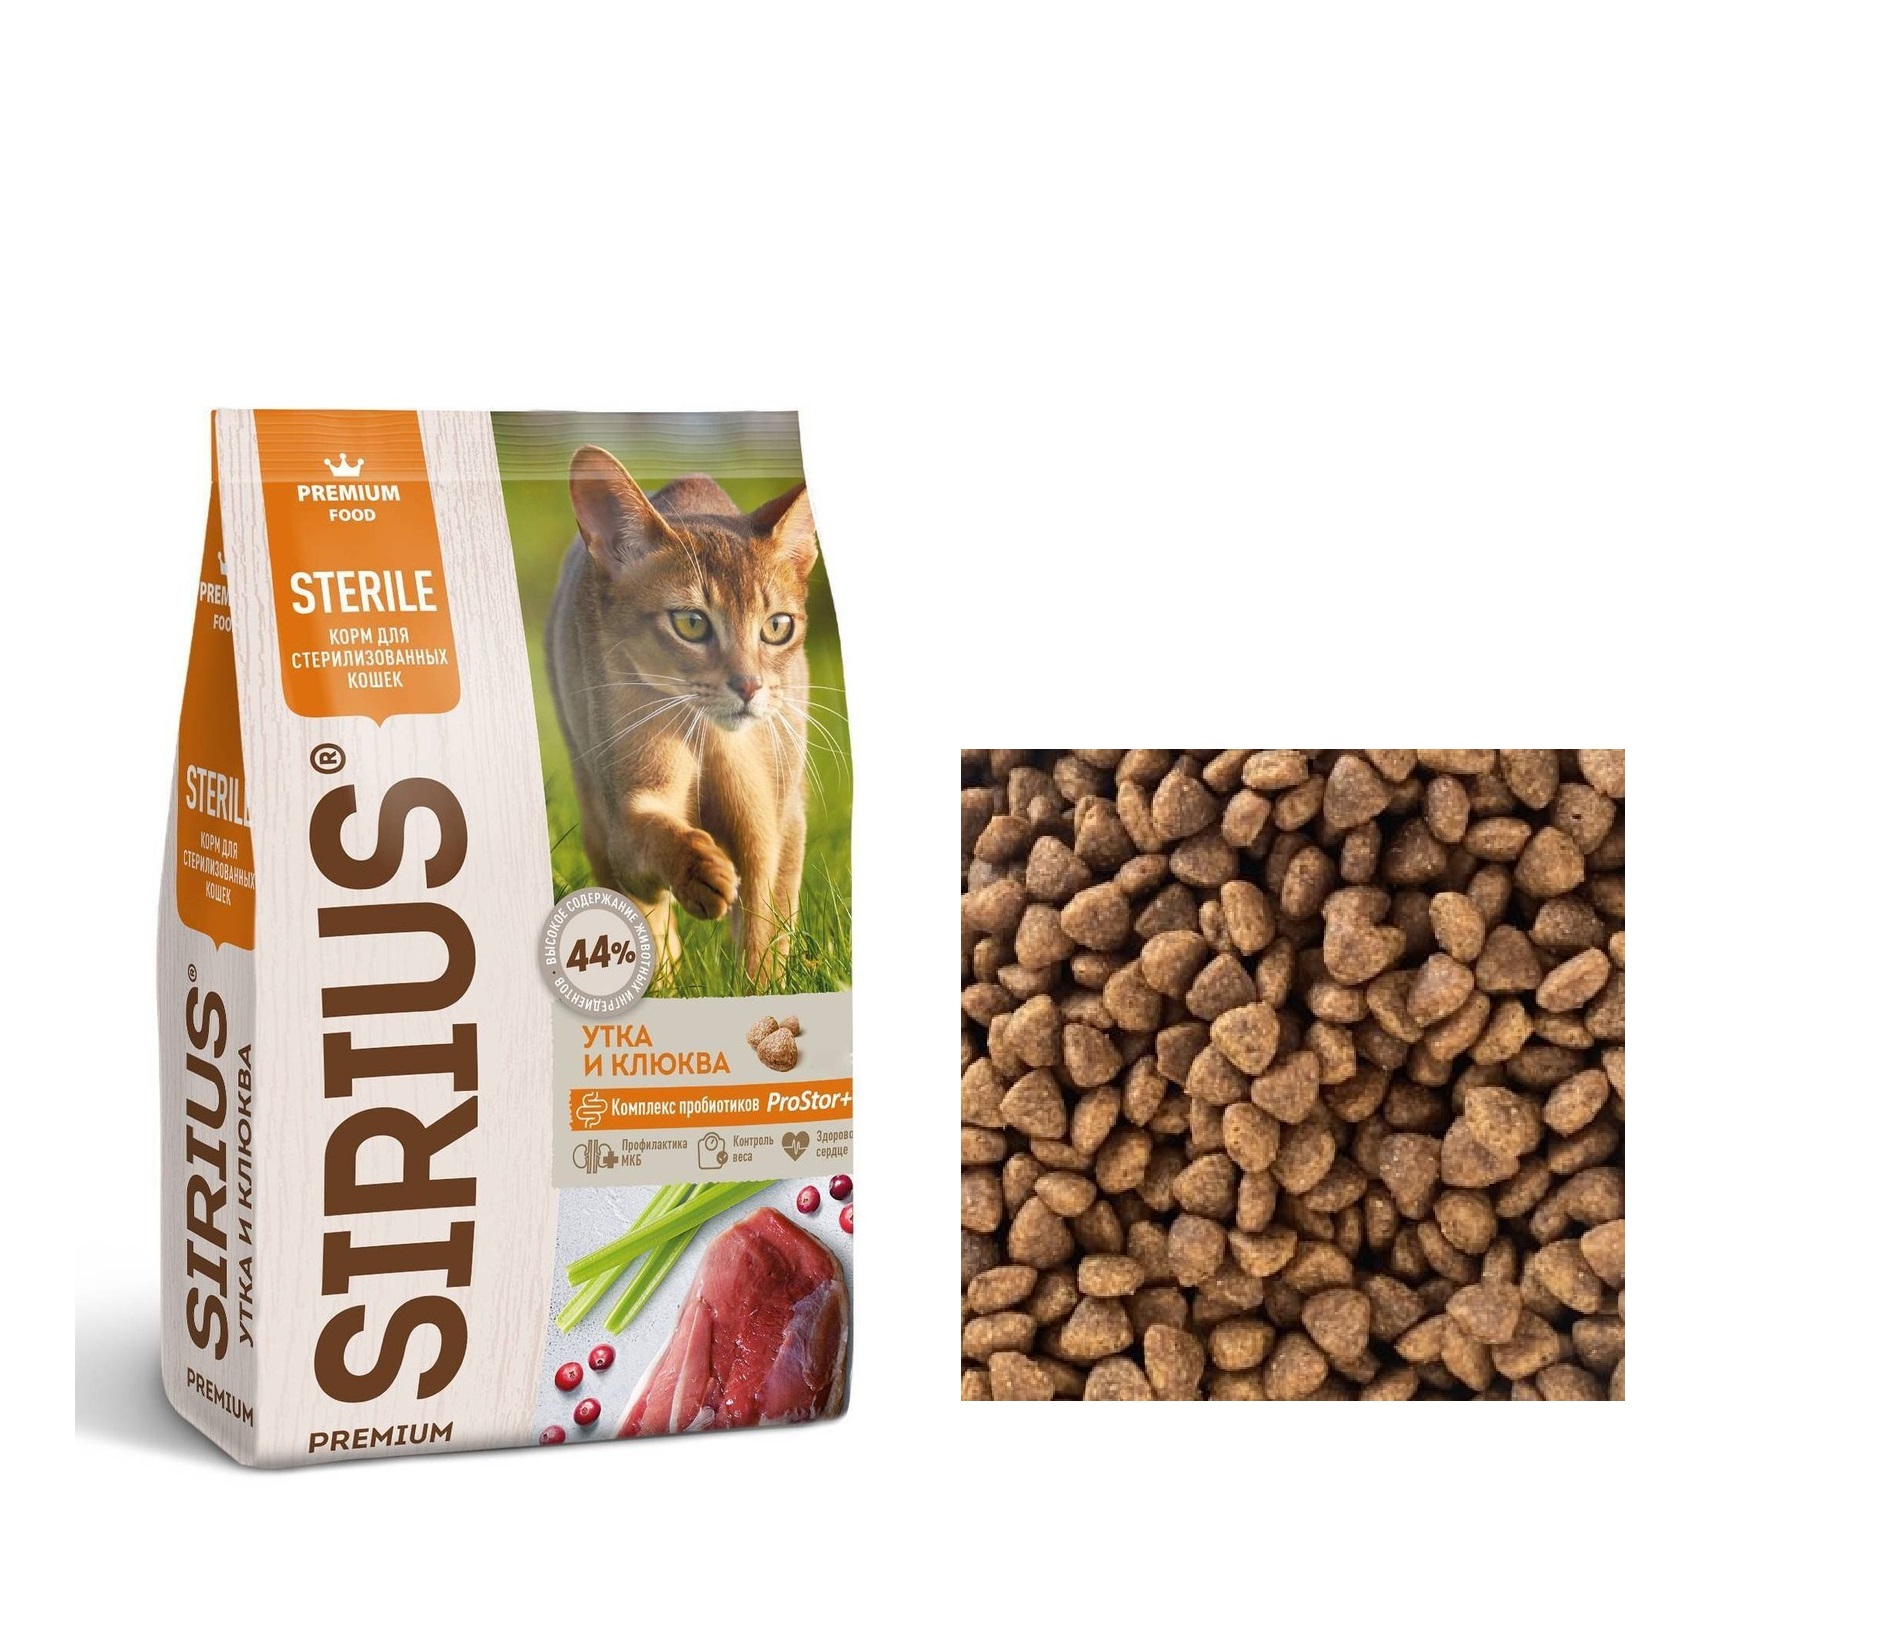 Сириус для кошек Стерилизованных Утка/Клюква, весовой 1кг (Sirius) + Подарок